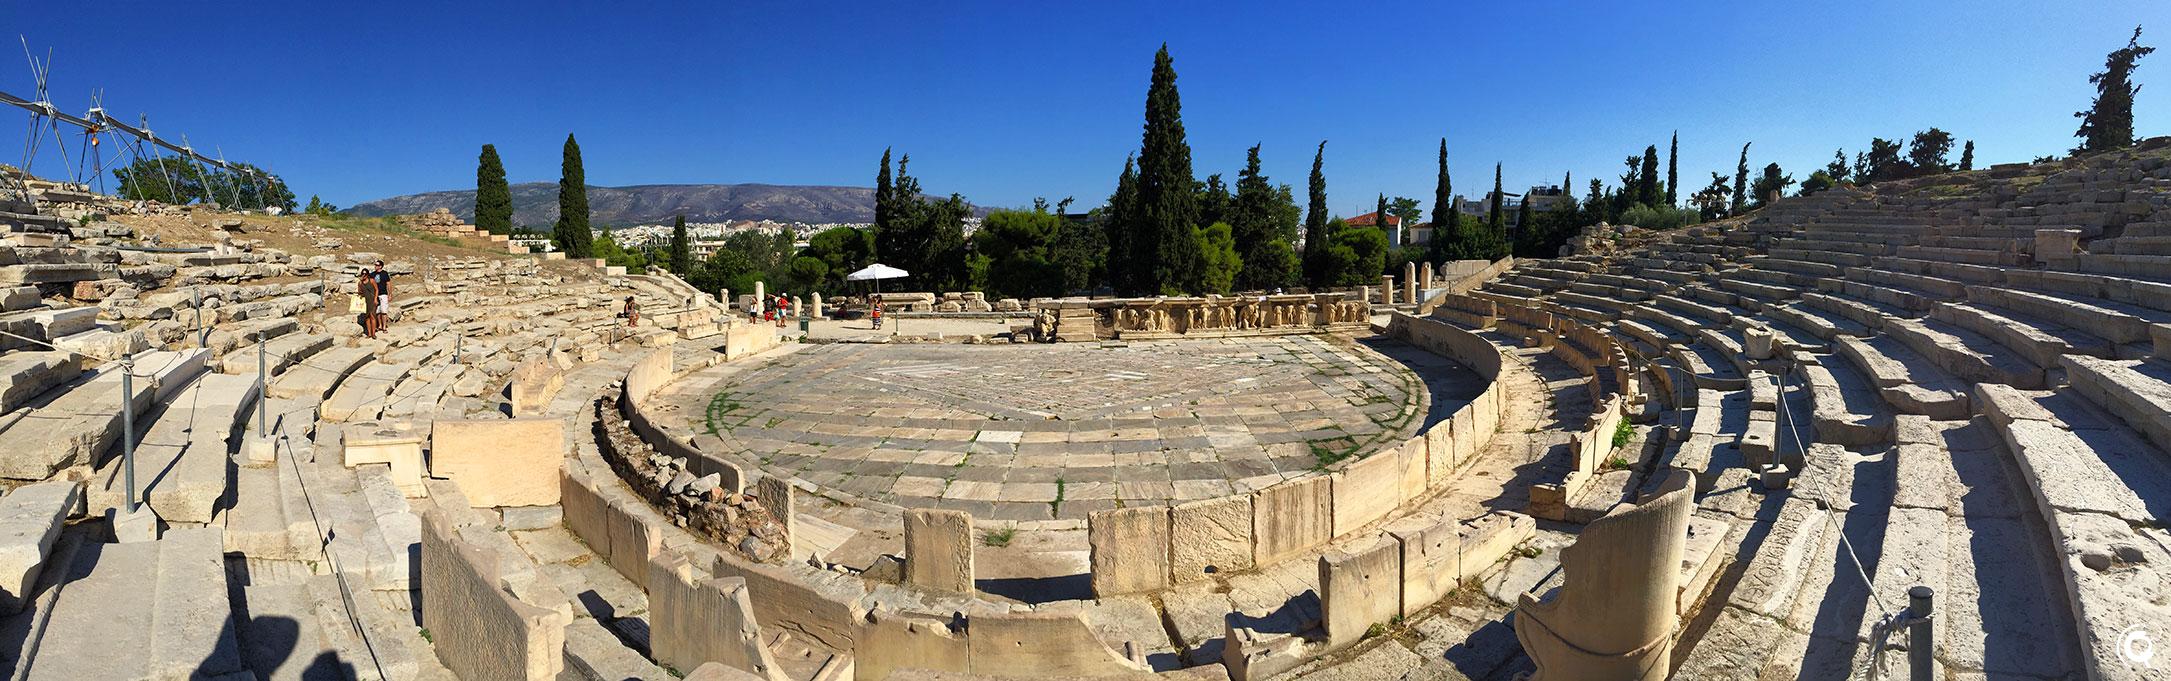 Le théâtre de Dionysos à Athènes